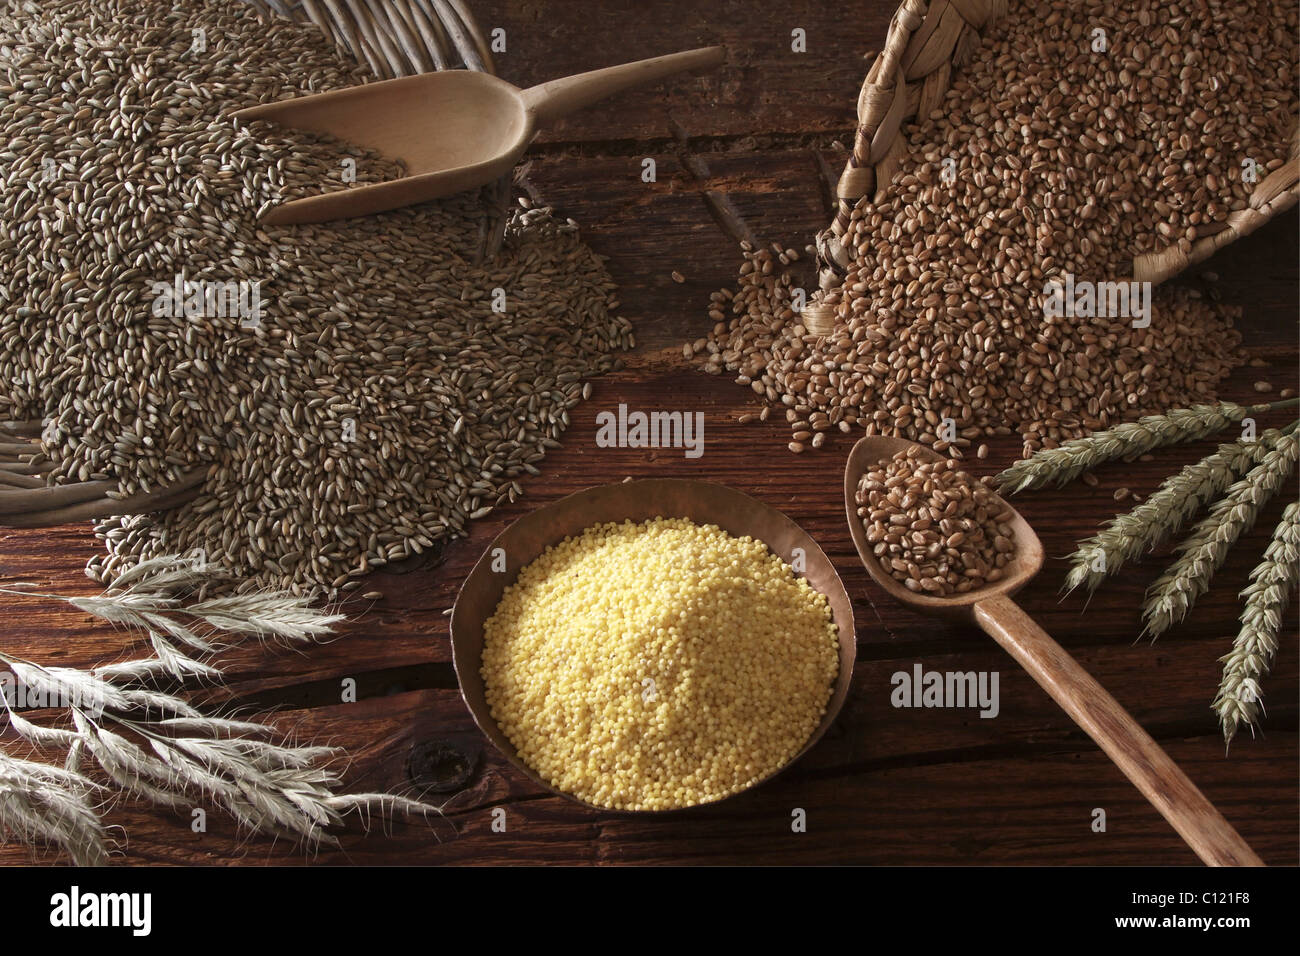 Différents types de céréales, de seigle (Secale cereale), blé (Triticum) et de Millet (Panicum miliaceum) sur une surface en bois Banque D'Images